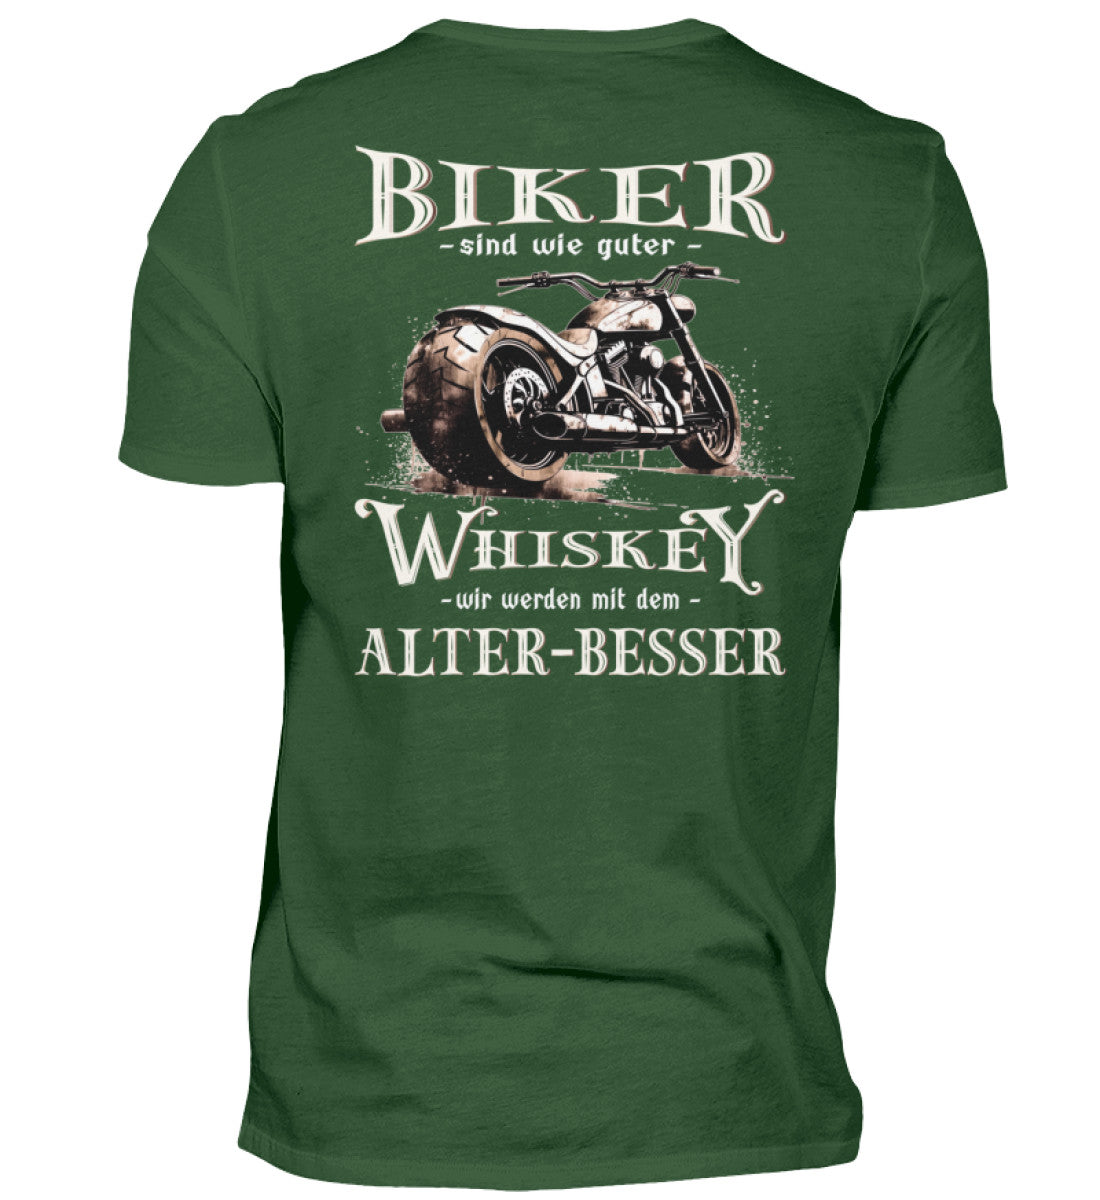 Biker T-Shirt mit einem vintage Aufdruck, Biker sind wie gute Whiskey - wir werden mit dem Alter besser mit Back Print in dunkel grün. 